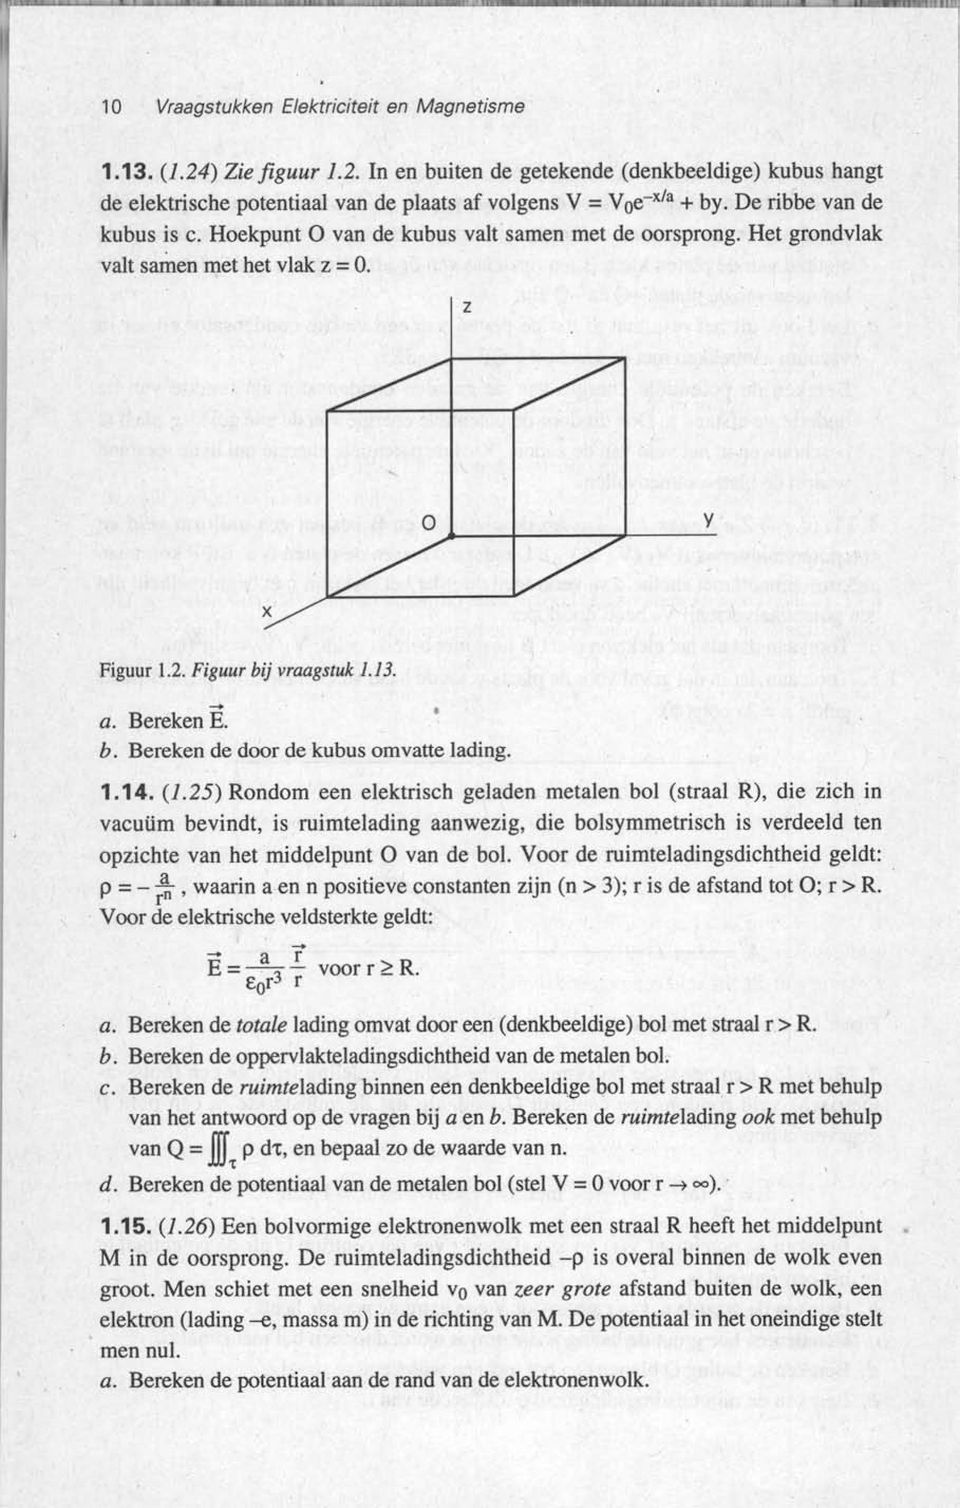 Bereken E. b. Bereken de door de kubus omvatte lading. 1.14. (1.